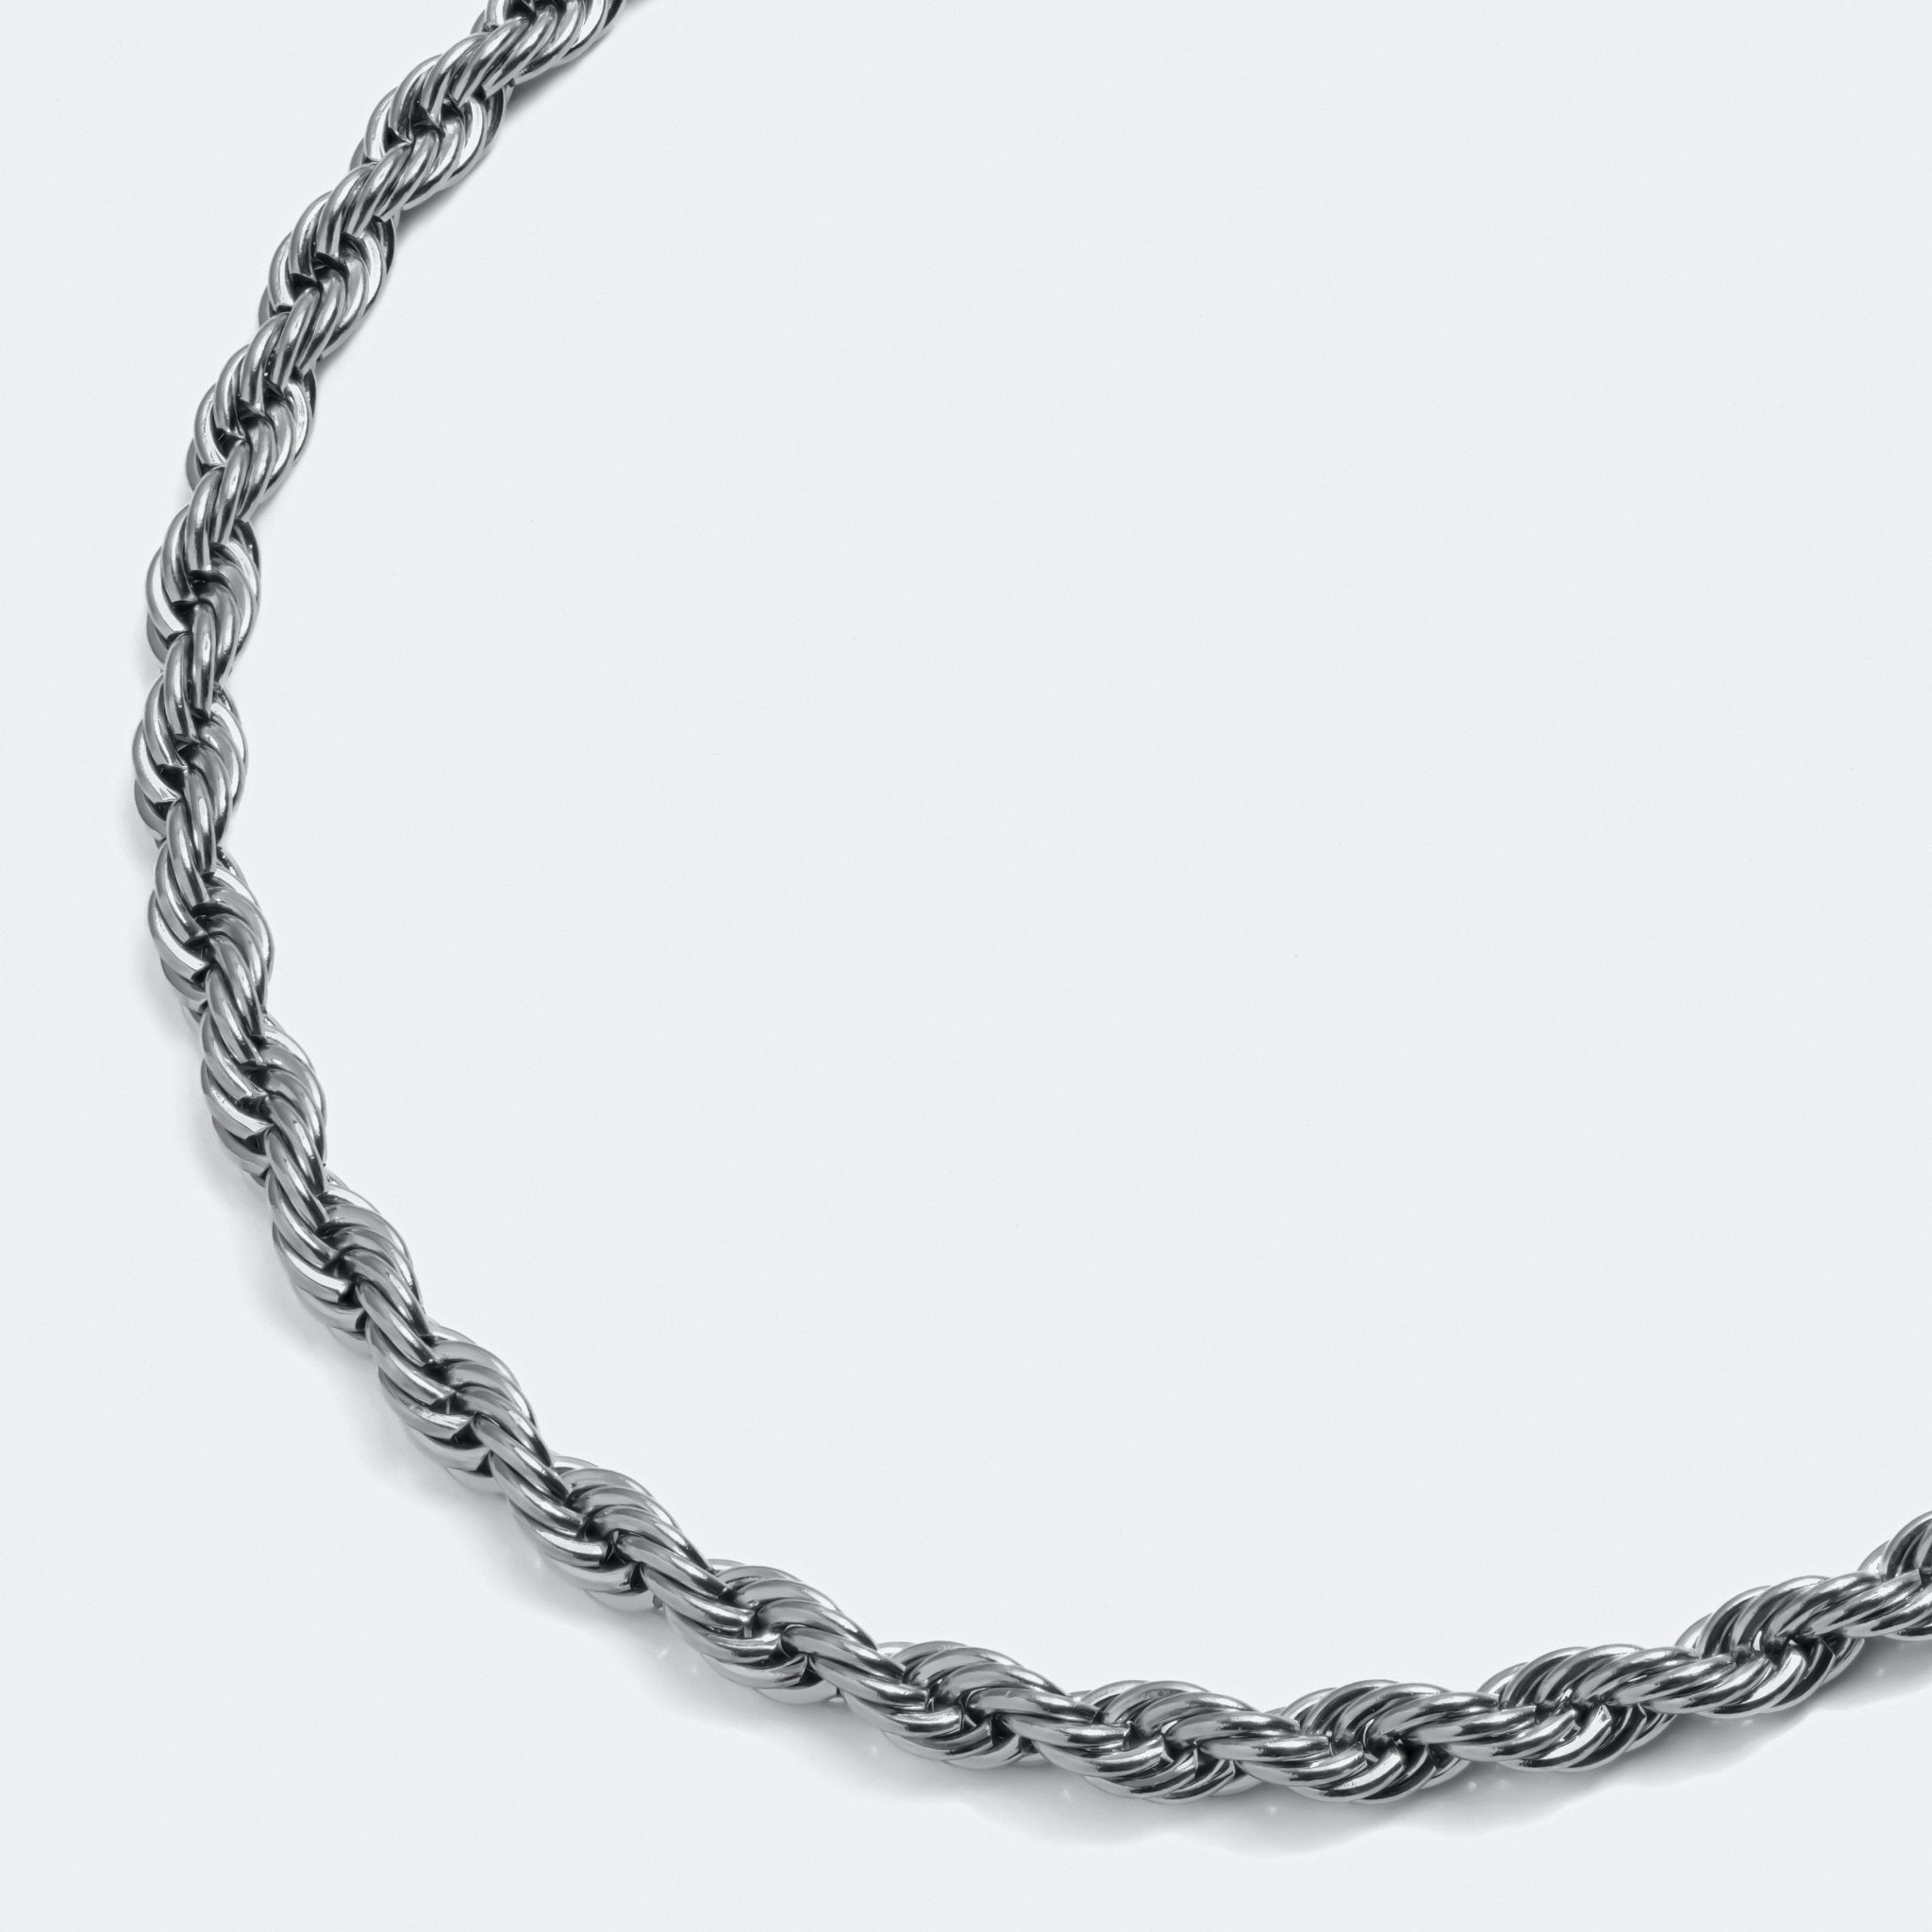 Rope Chain Necklace Silver W - Elegatto